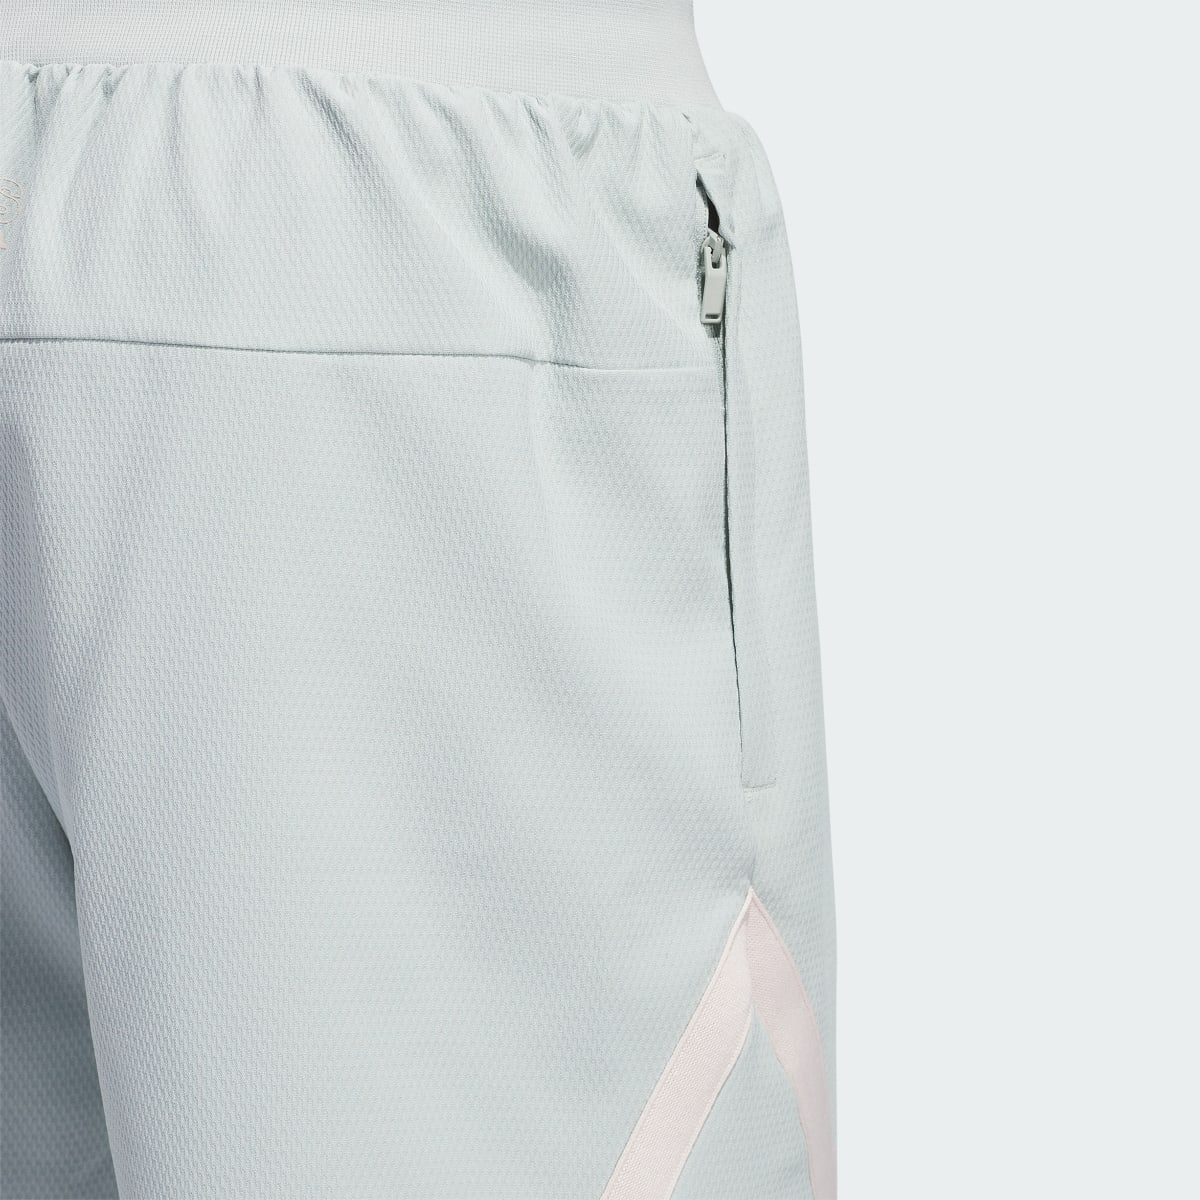 Adidas Select Shorts. 6